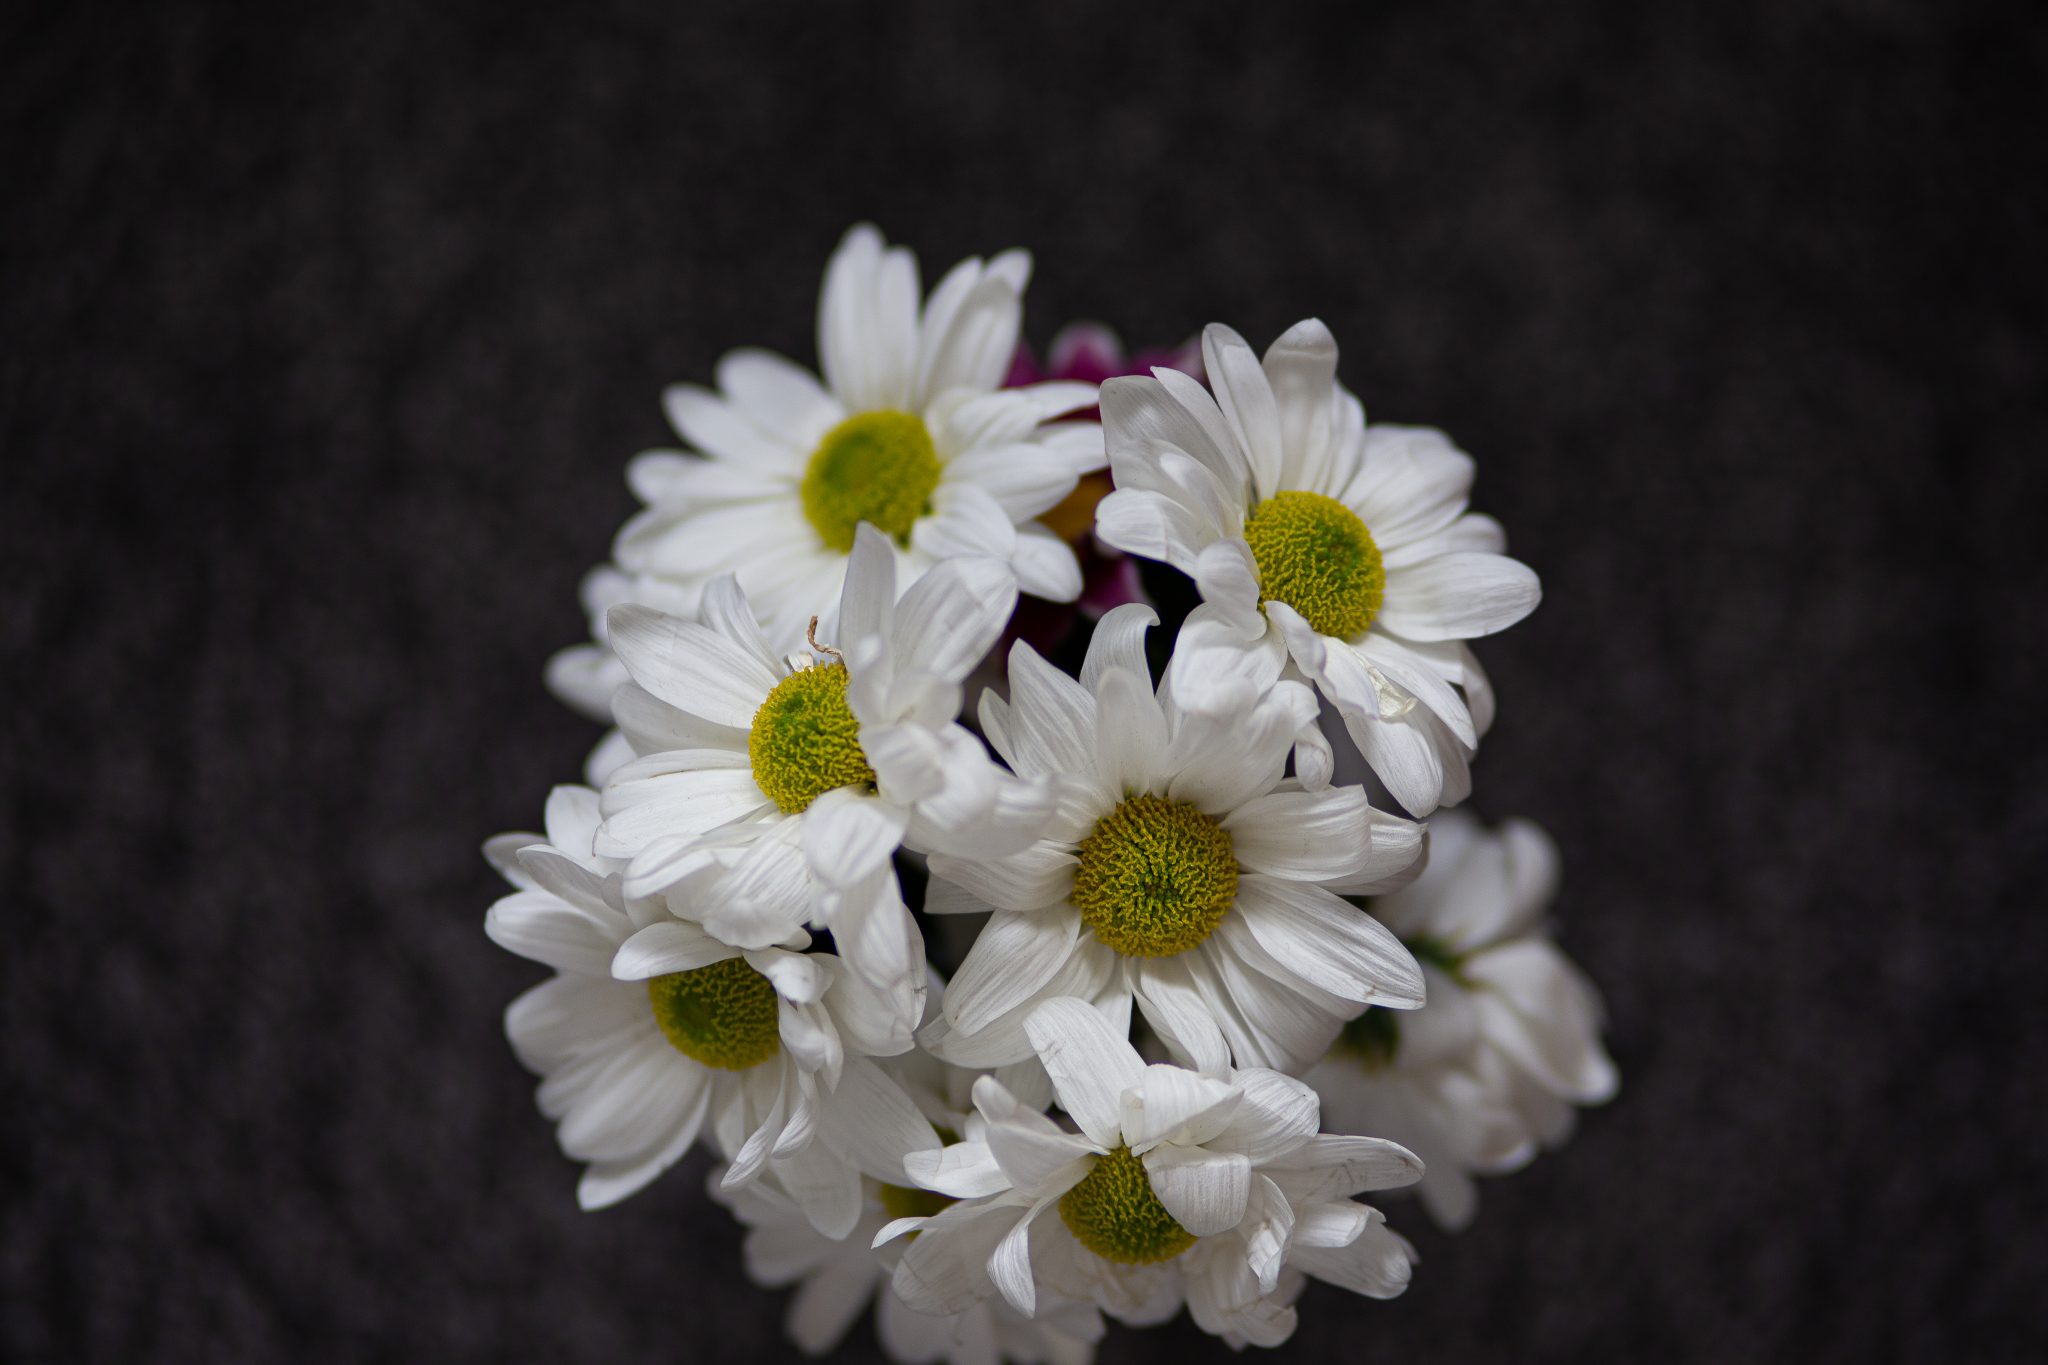 White flowers, margaritas